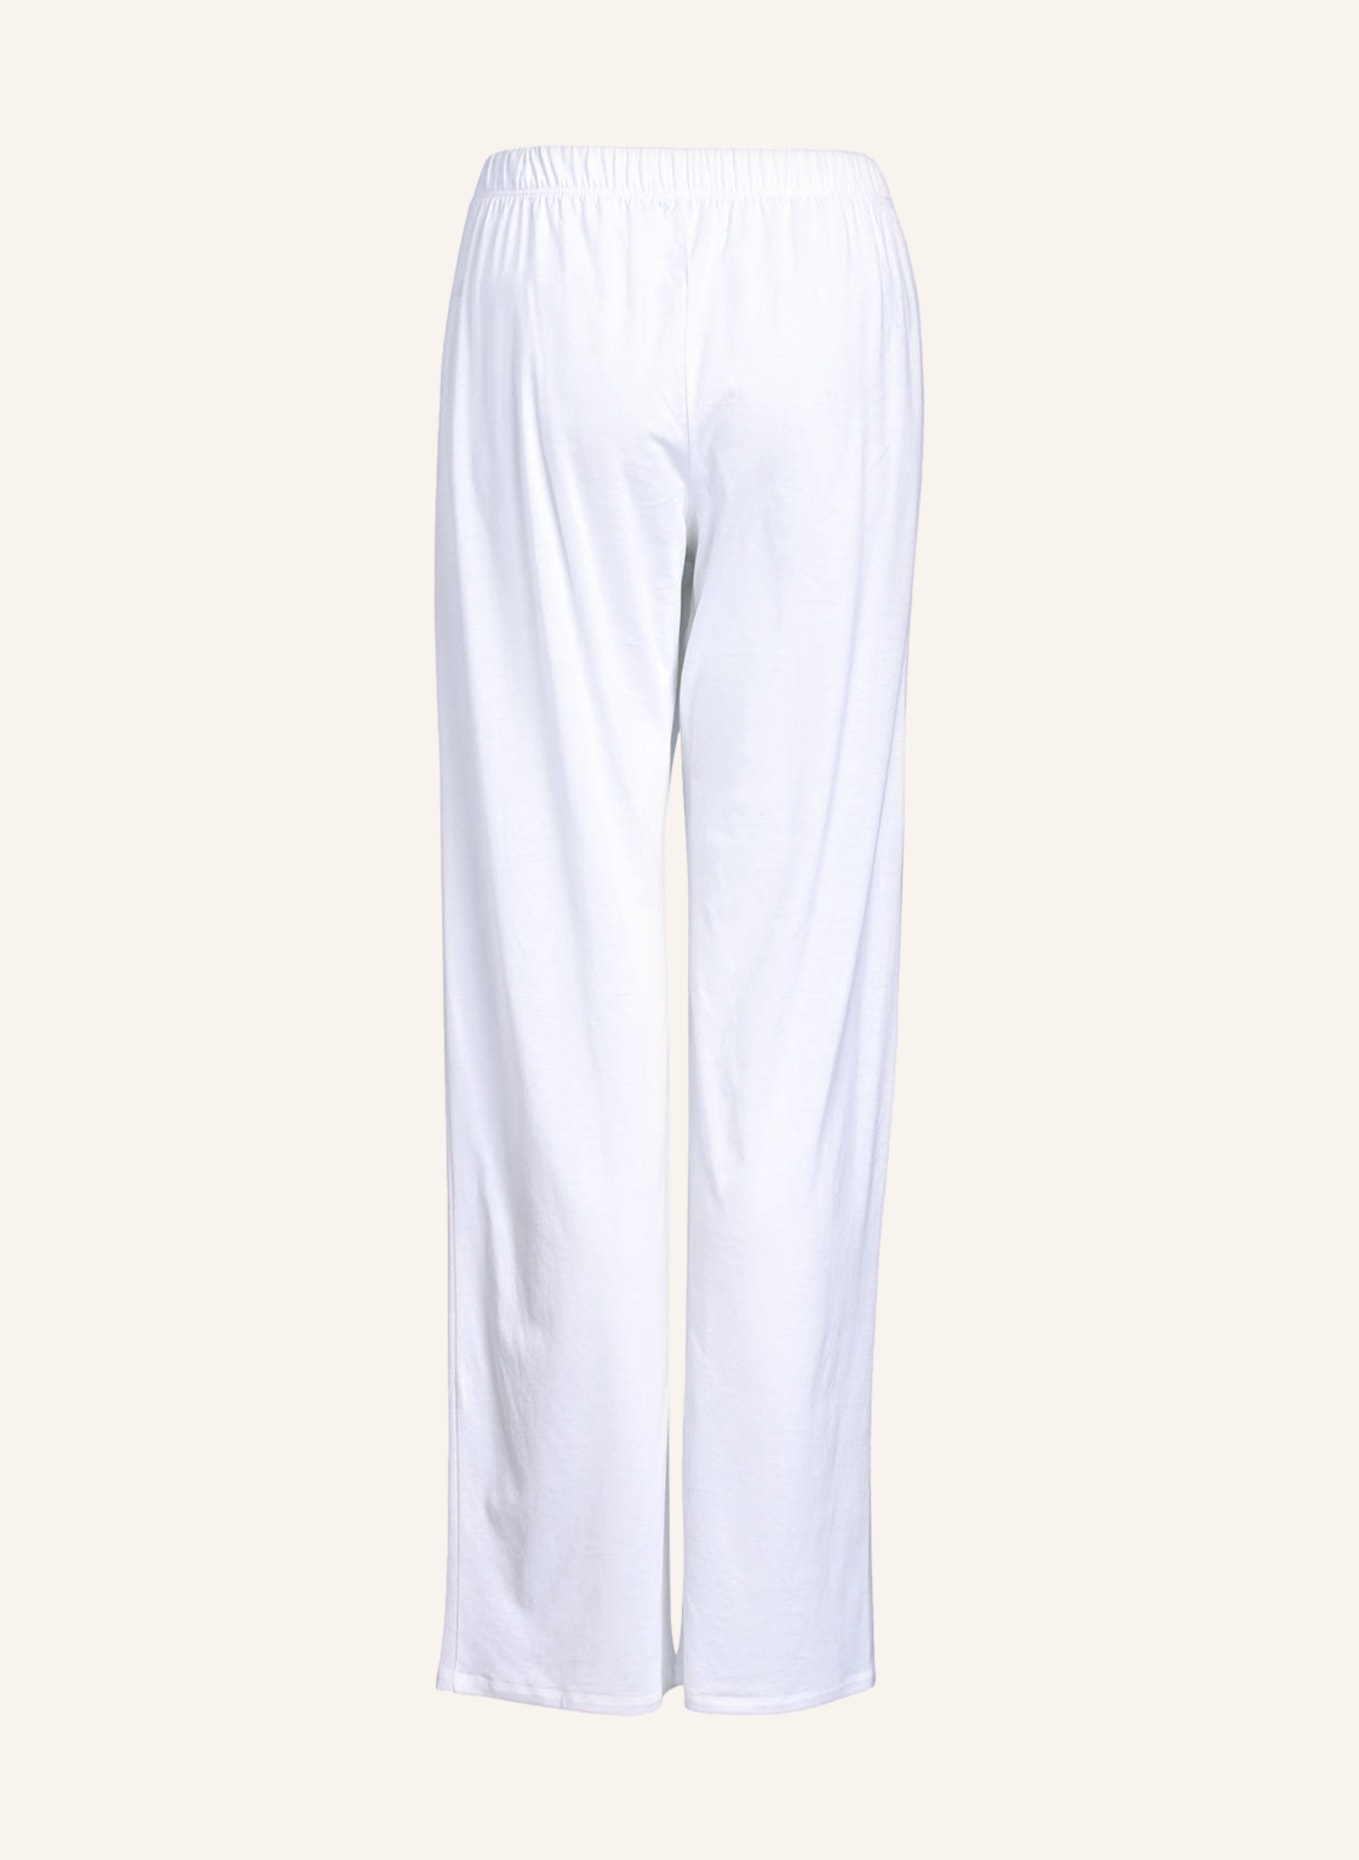 HANRO Pajama pants COTTON DELUXE, Color: WHITE (Image 2)